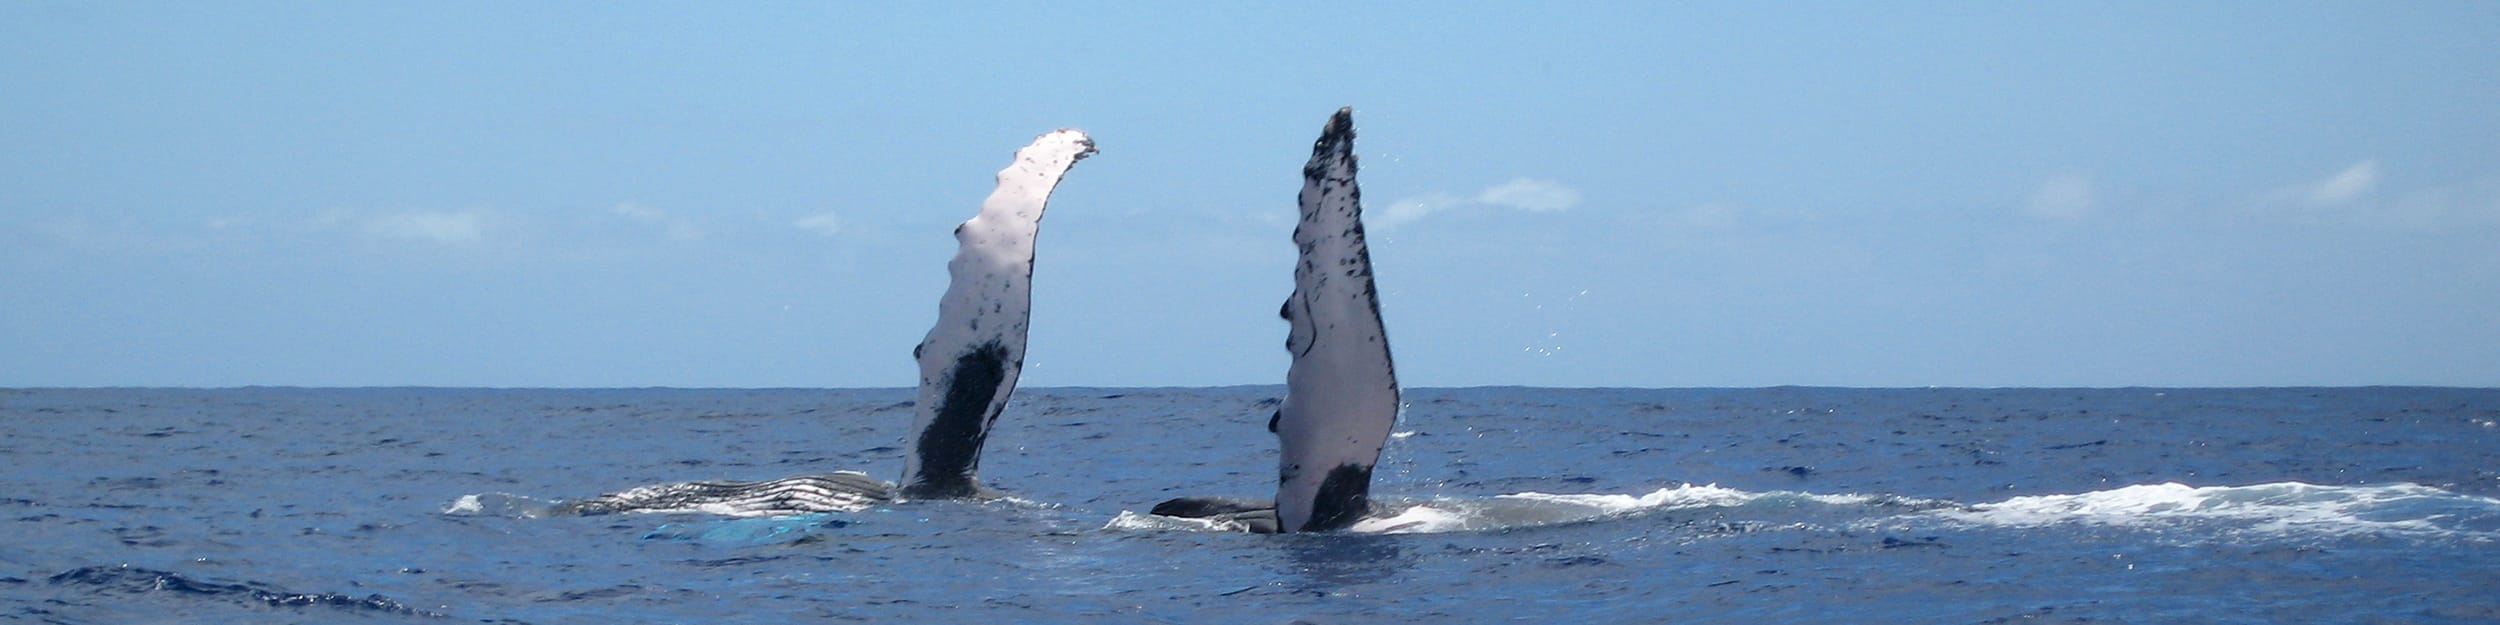 Environnement: A La Réunion, une chaîne Youtube pour mieux apprendre à observer les baleines